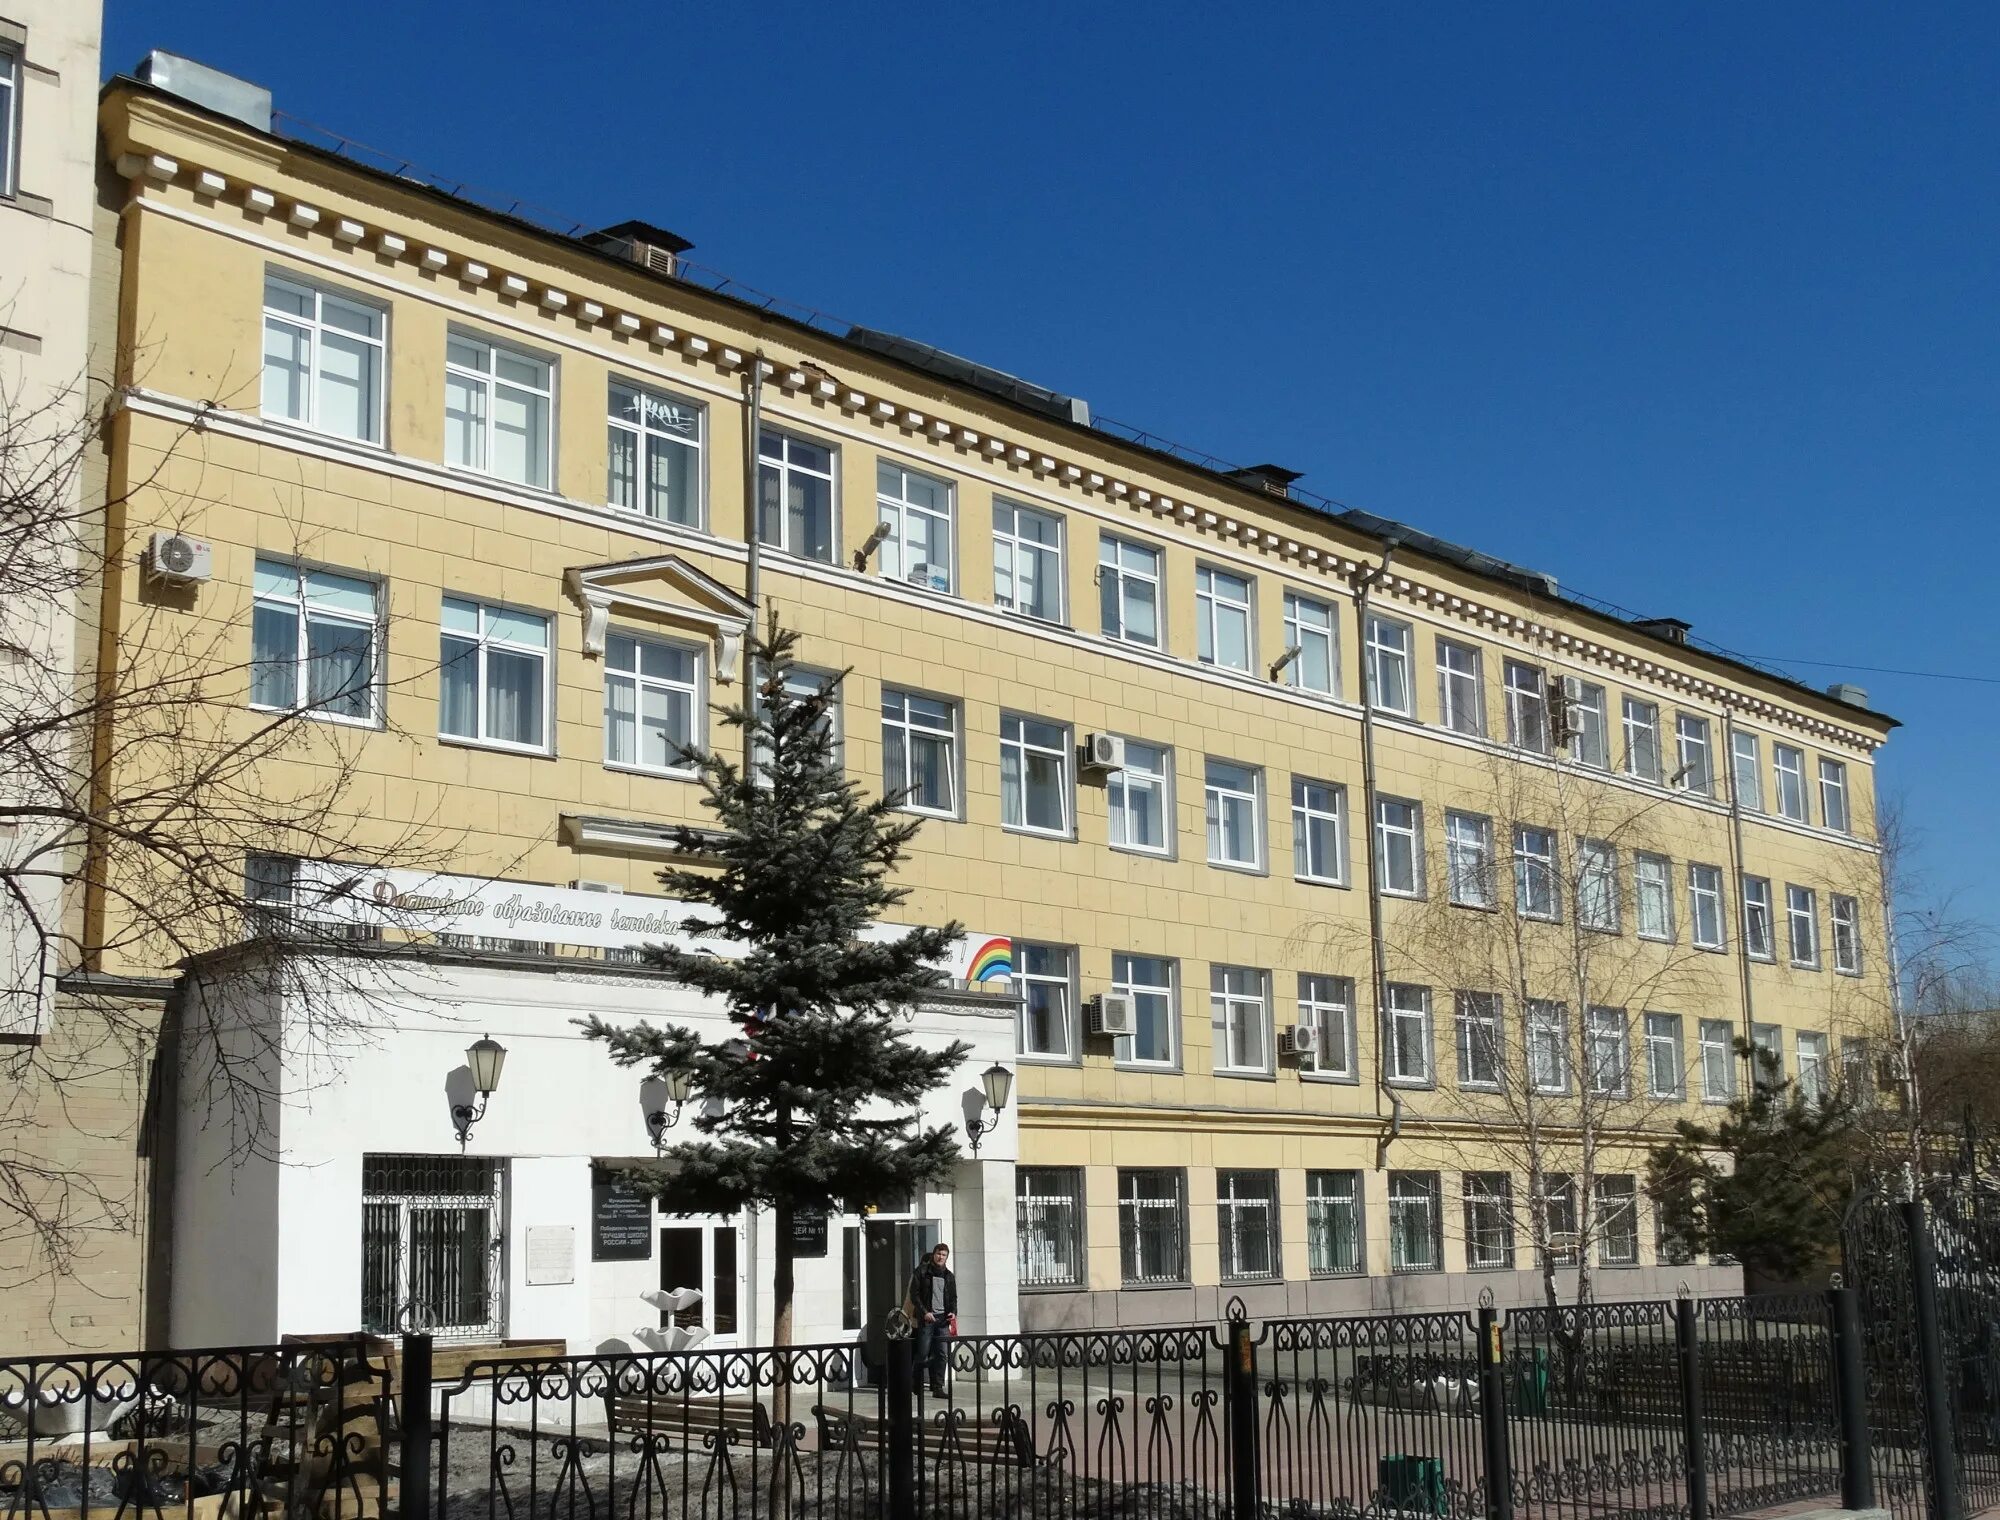 Образовательные учреждения г челябинска